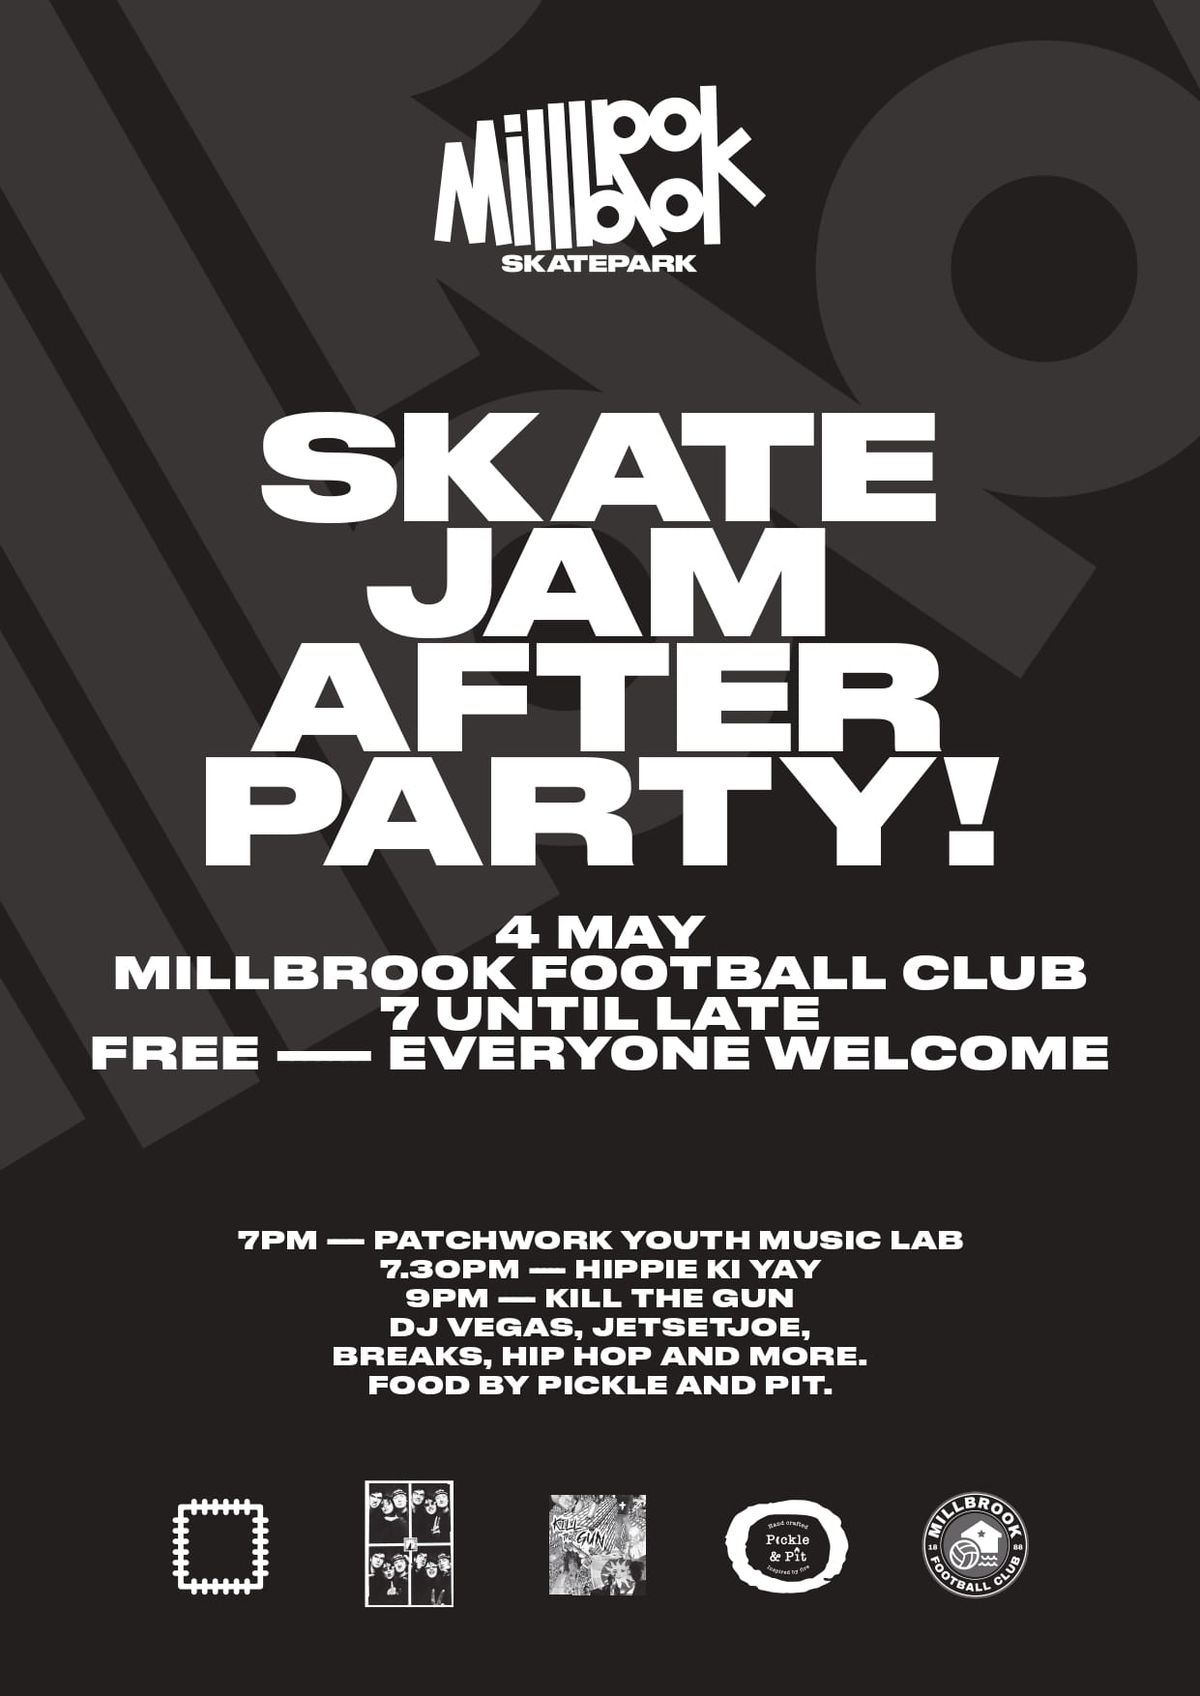 Millbrook Skatepark - Skate Jam AFTER PARTY!